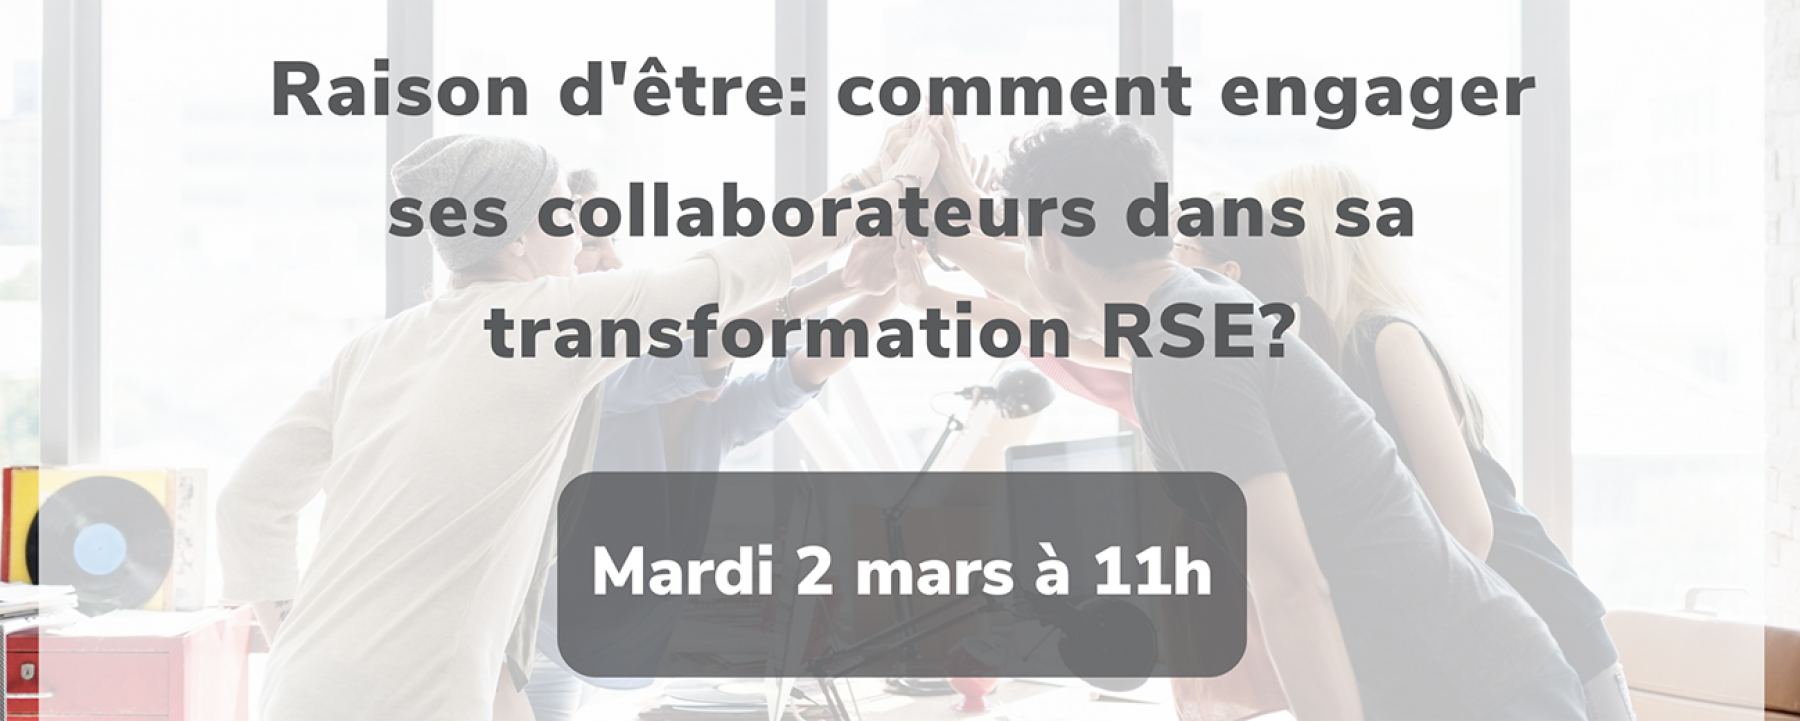 Raison d'être : comment engager ses collaborateurs dans sa transformation RSE ? organisé par CitizenWave le 2 mars